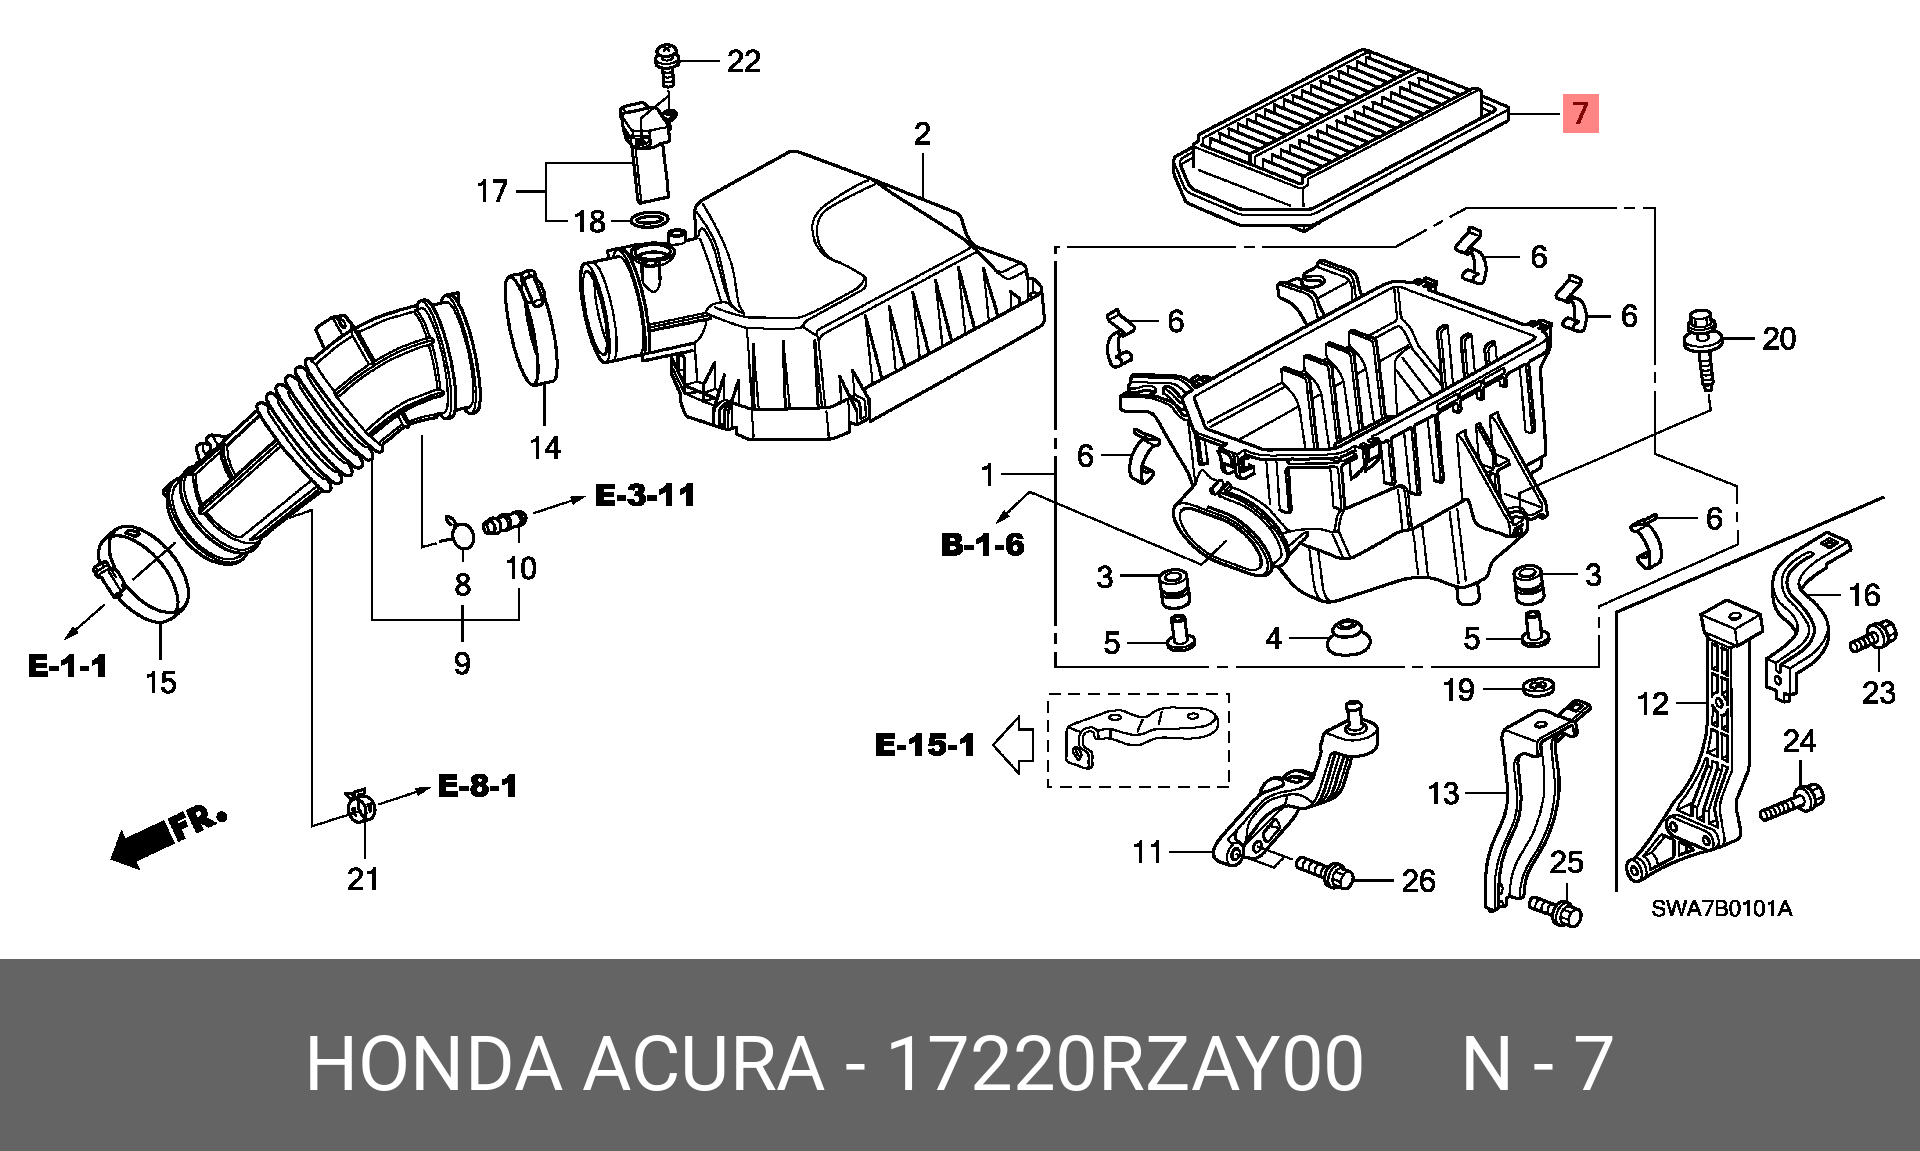 Воздушный фильтр срв 3. Фильтр воздушный Honda CR-V 3 2.4. Honda CRV фильтр воздушный 2.4. Воздушная система Honda CR V 3. Корпус воздушного фильтра Honda XR 250.